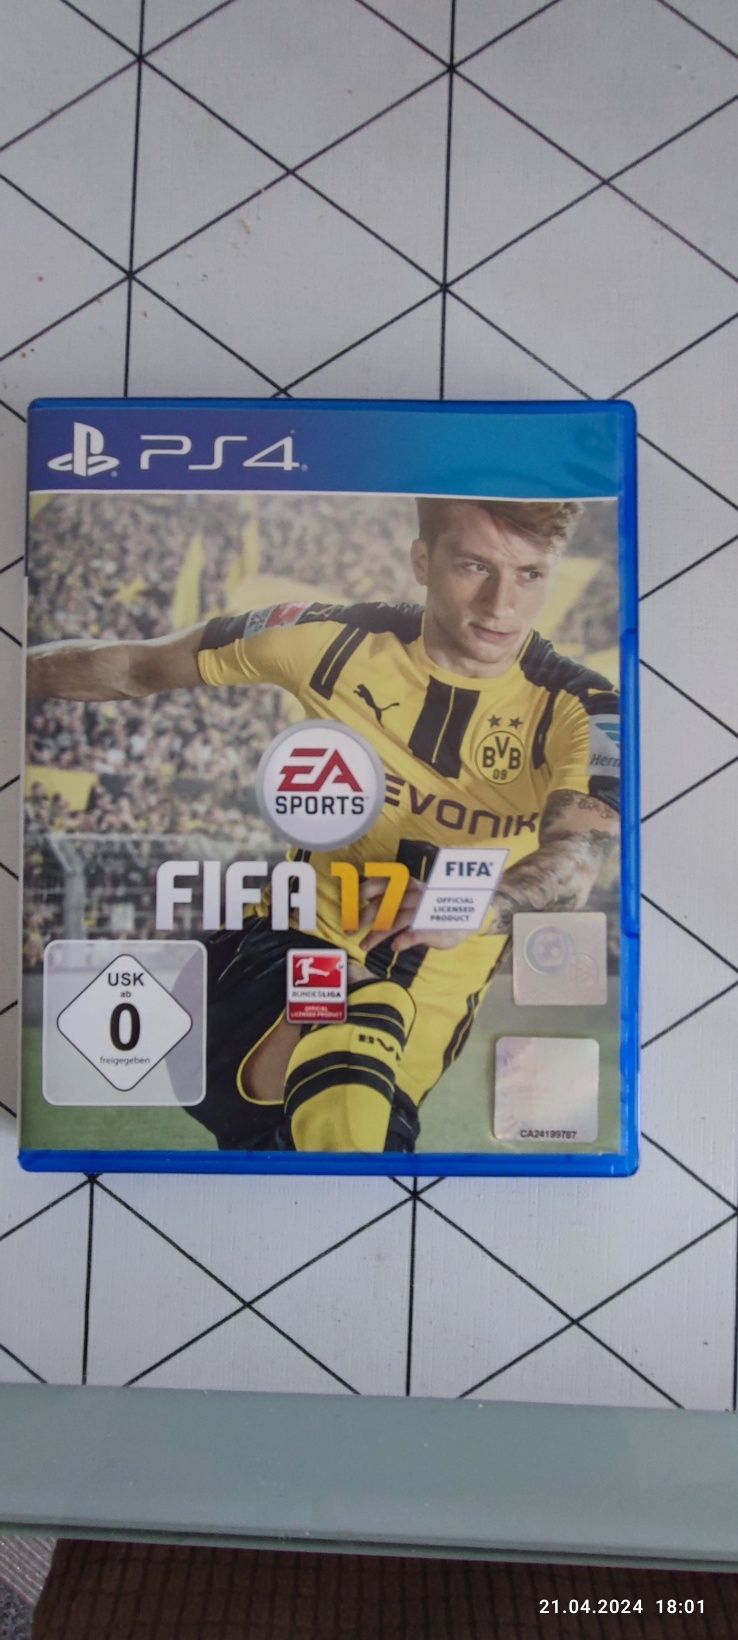 FIFA 17 - Play Playstation